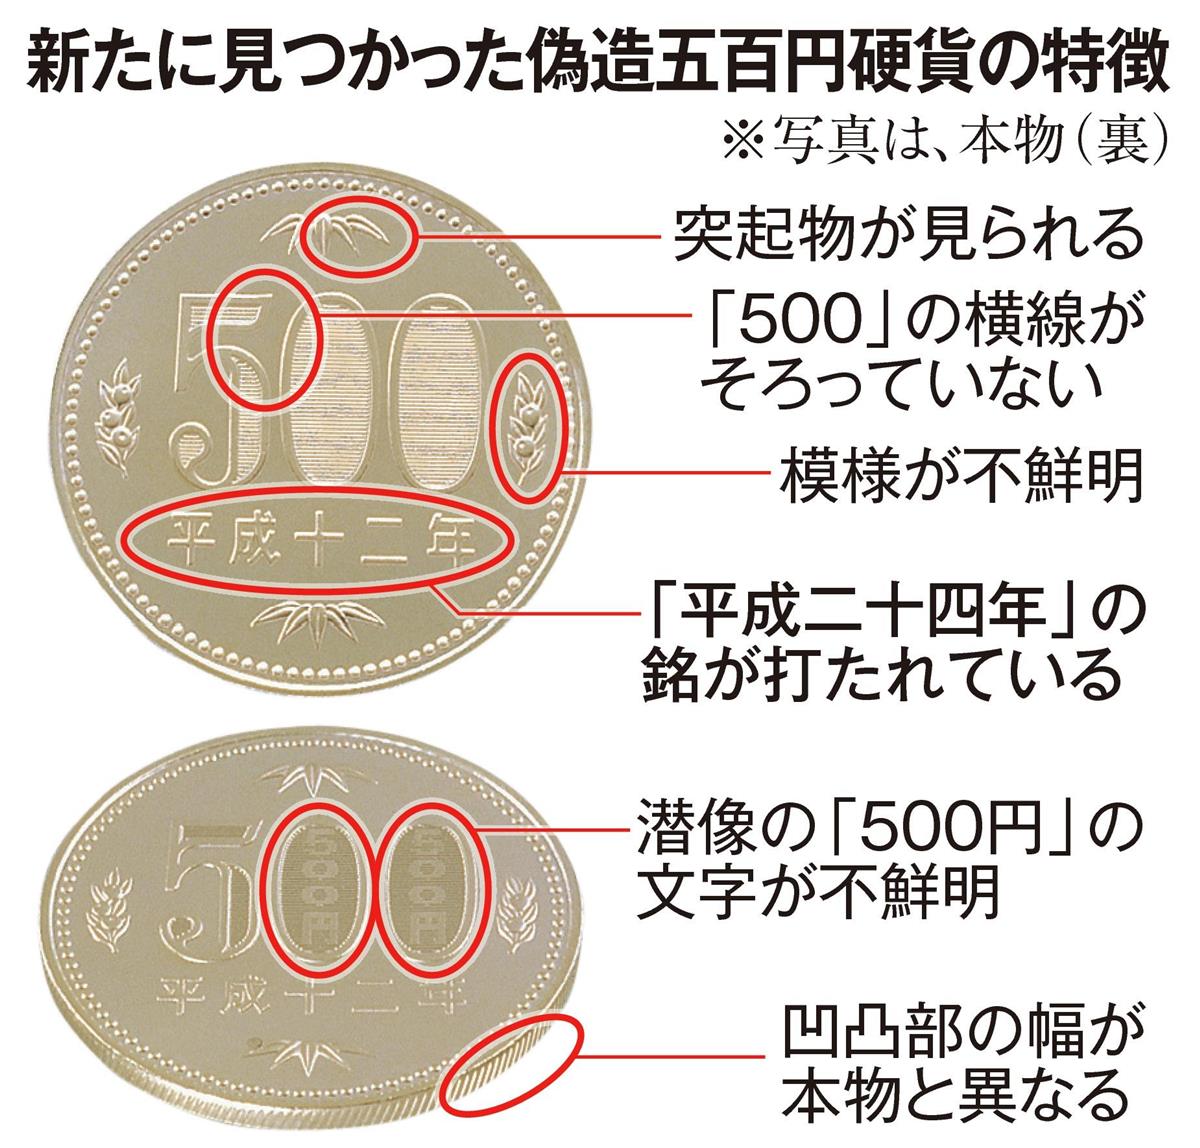 偽造五百円硬貨相次ぎ見つかる 新硬貨発行前の駆け込みか 産経ニュース